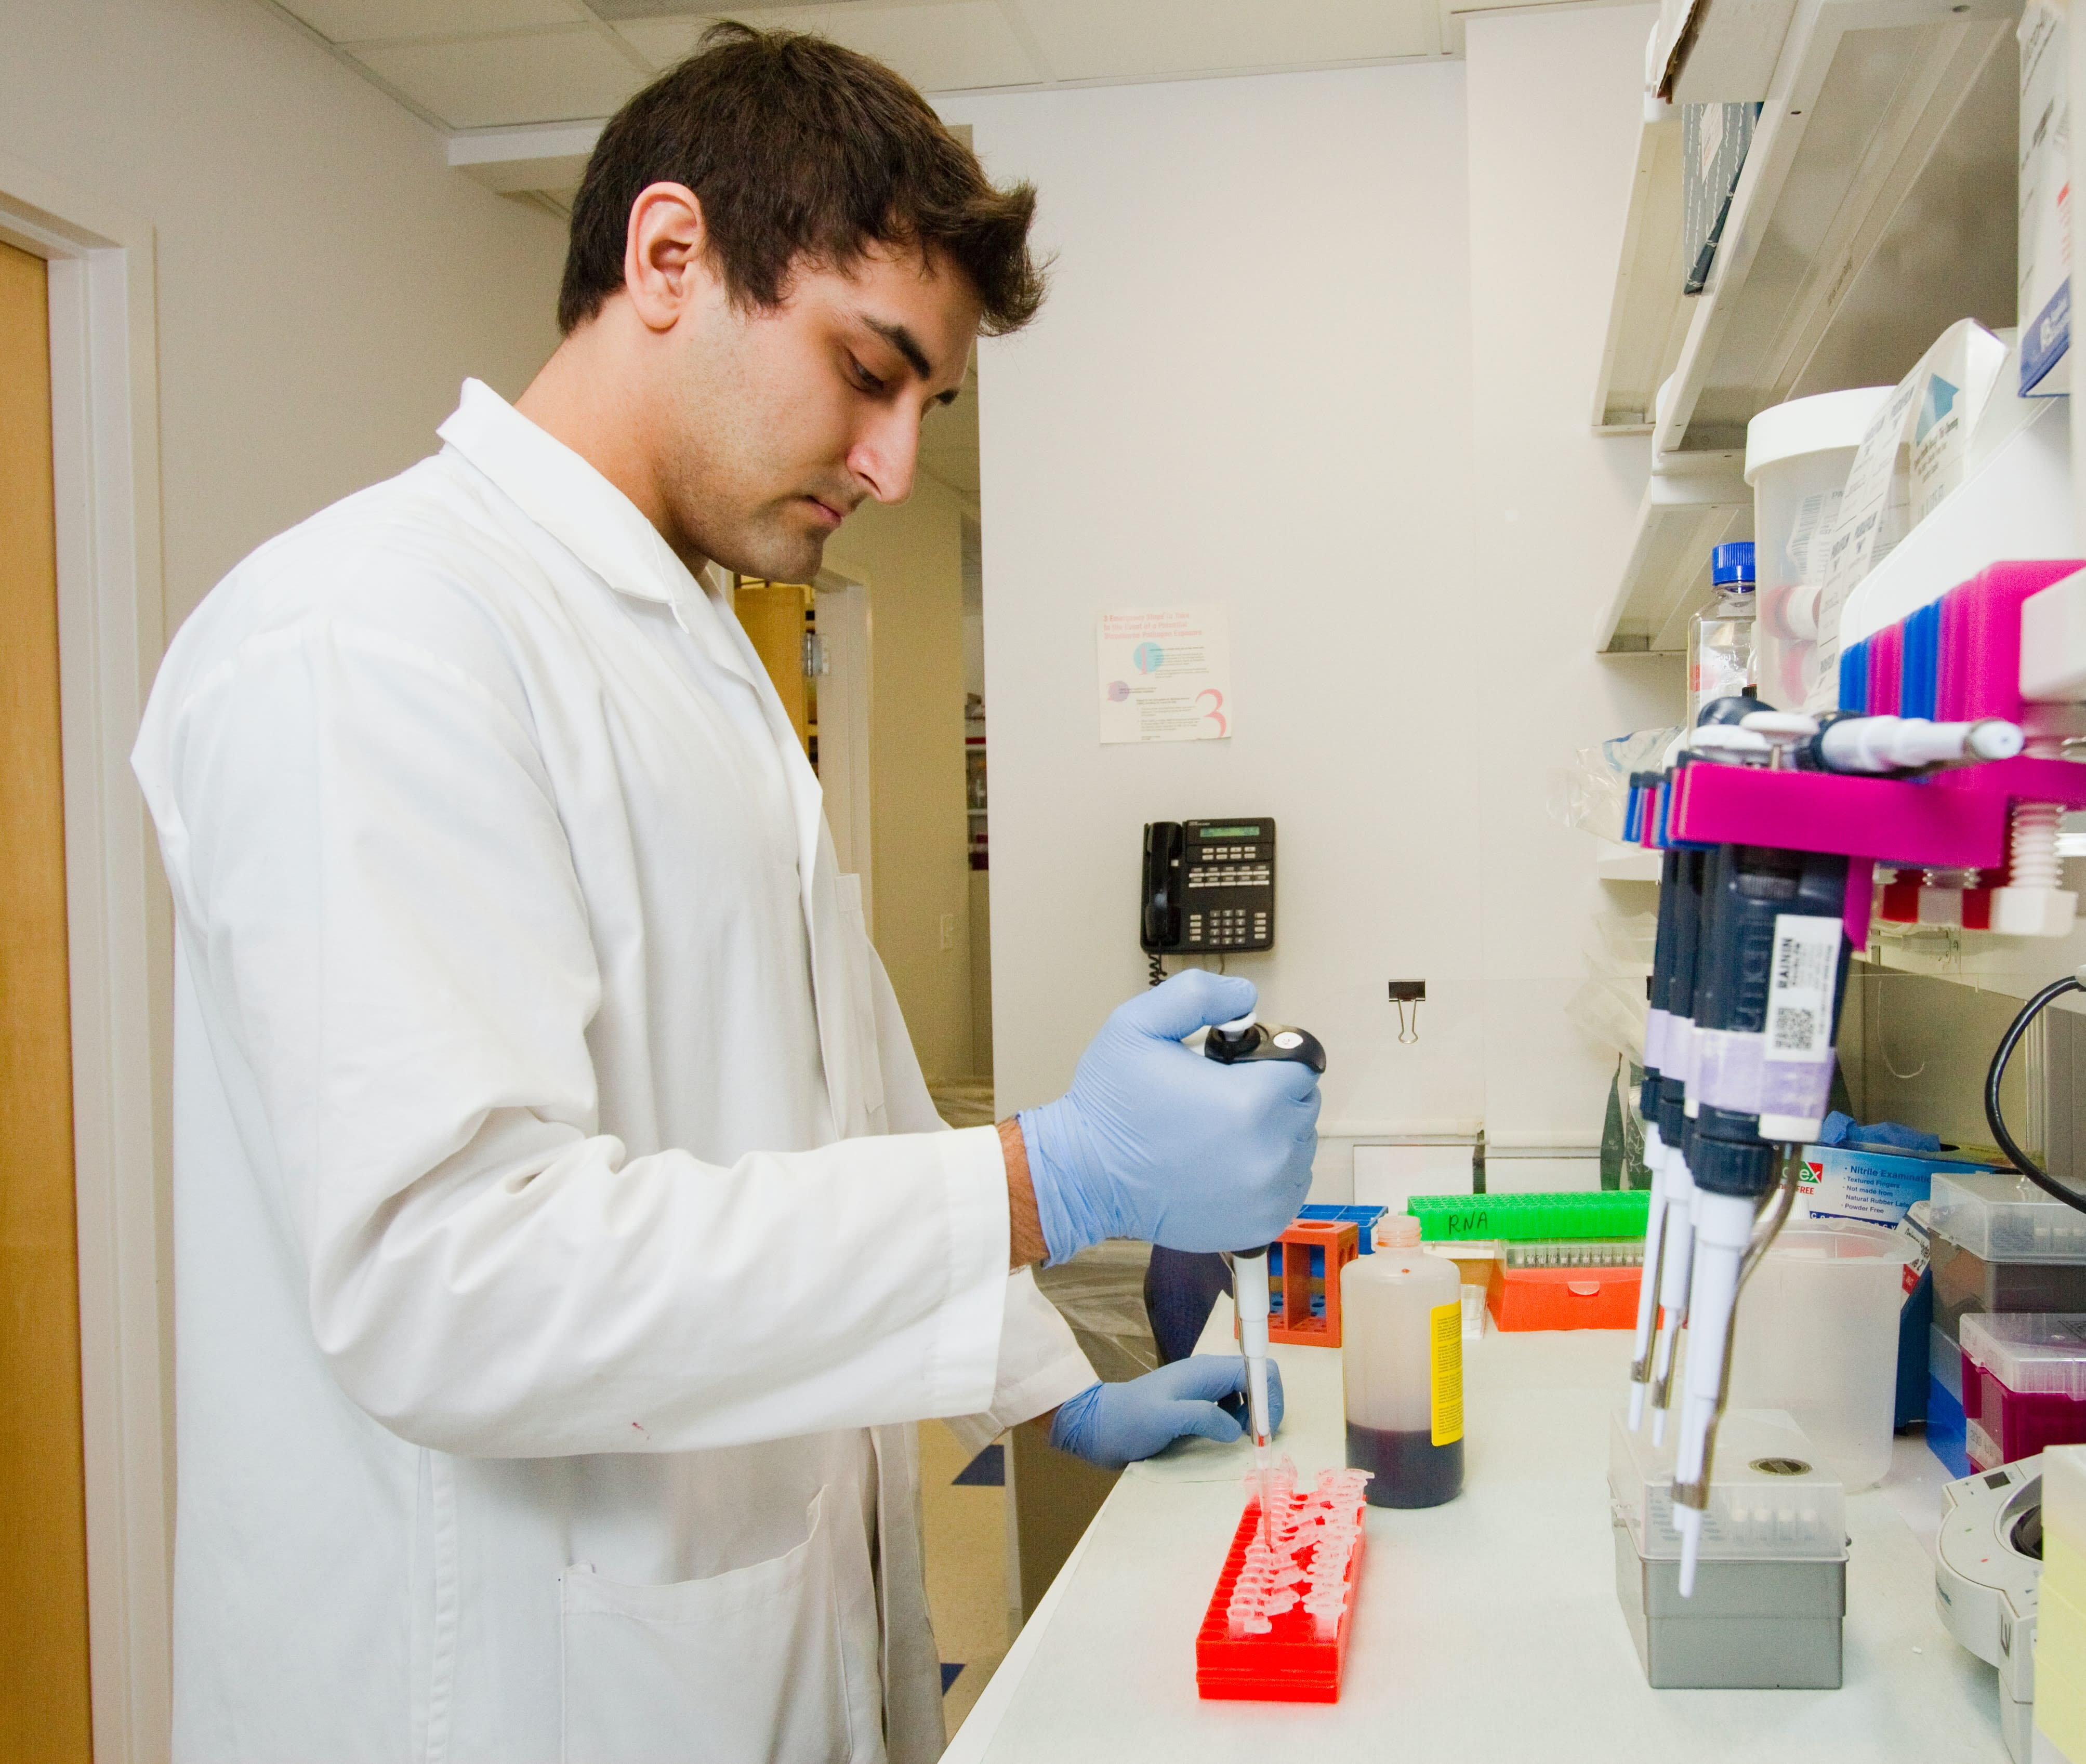 Uno scienziato maschio in un laboratorio pipetta reagente proteico in provette eppendorf.